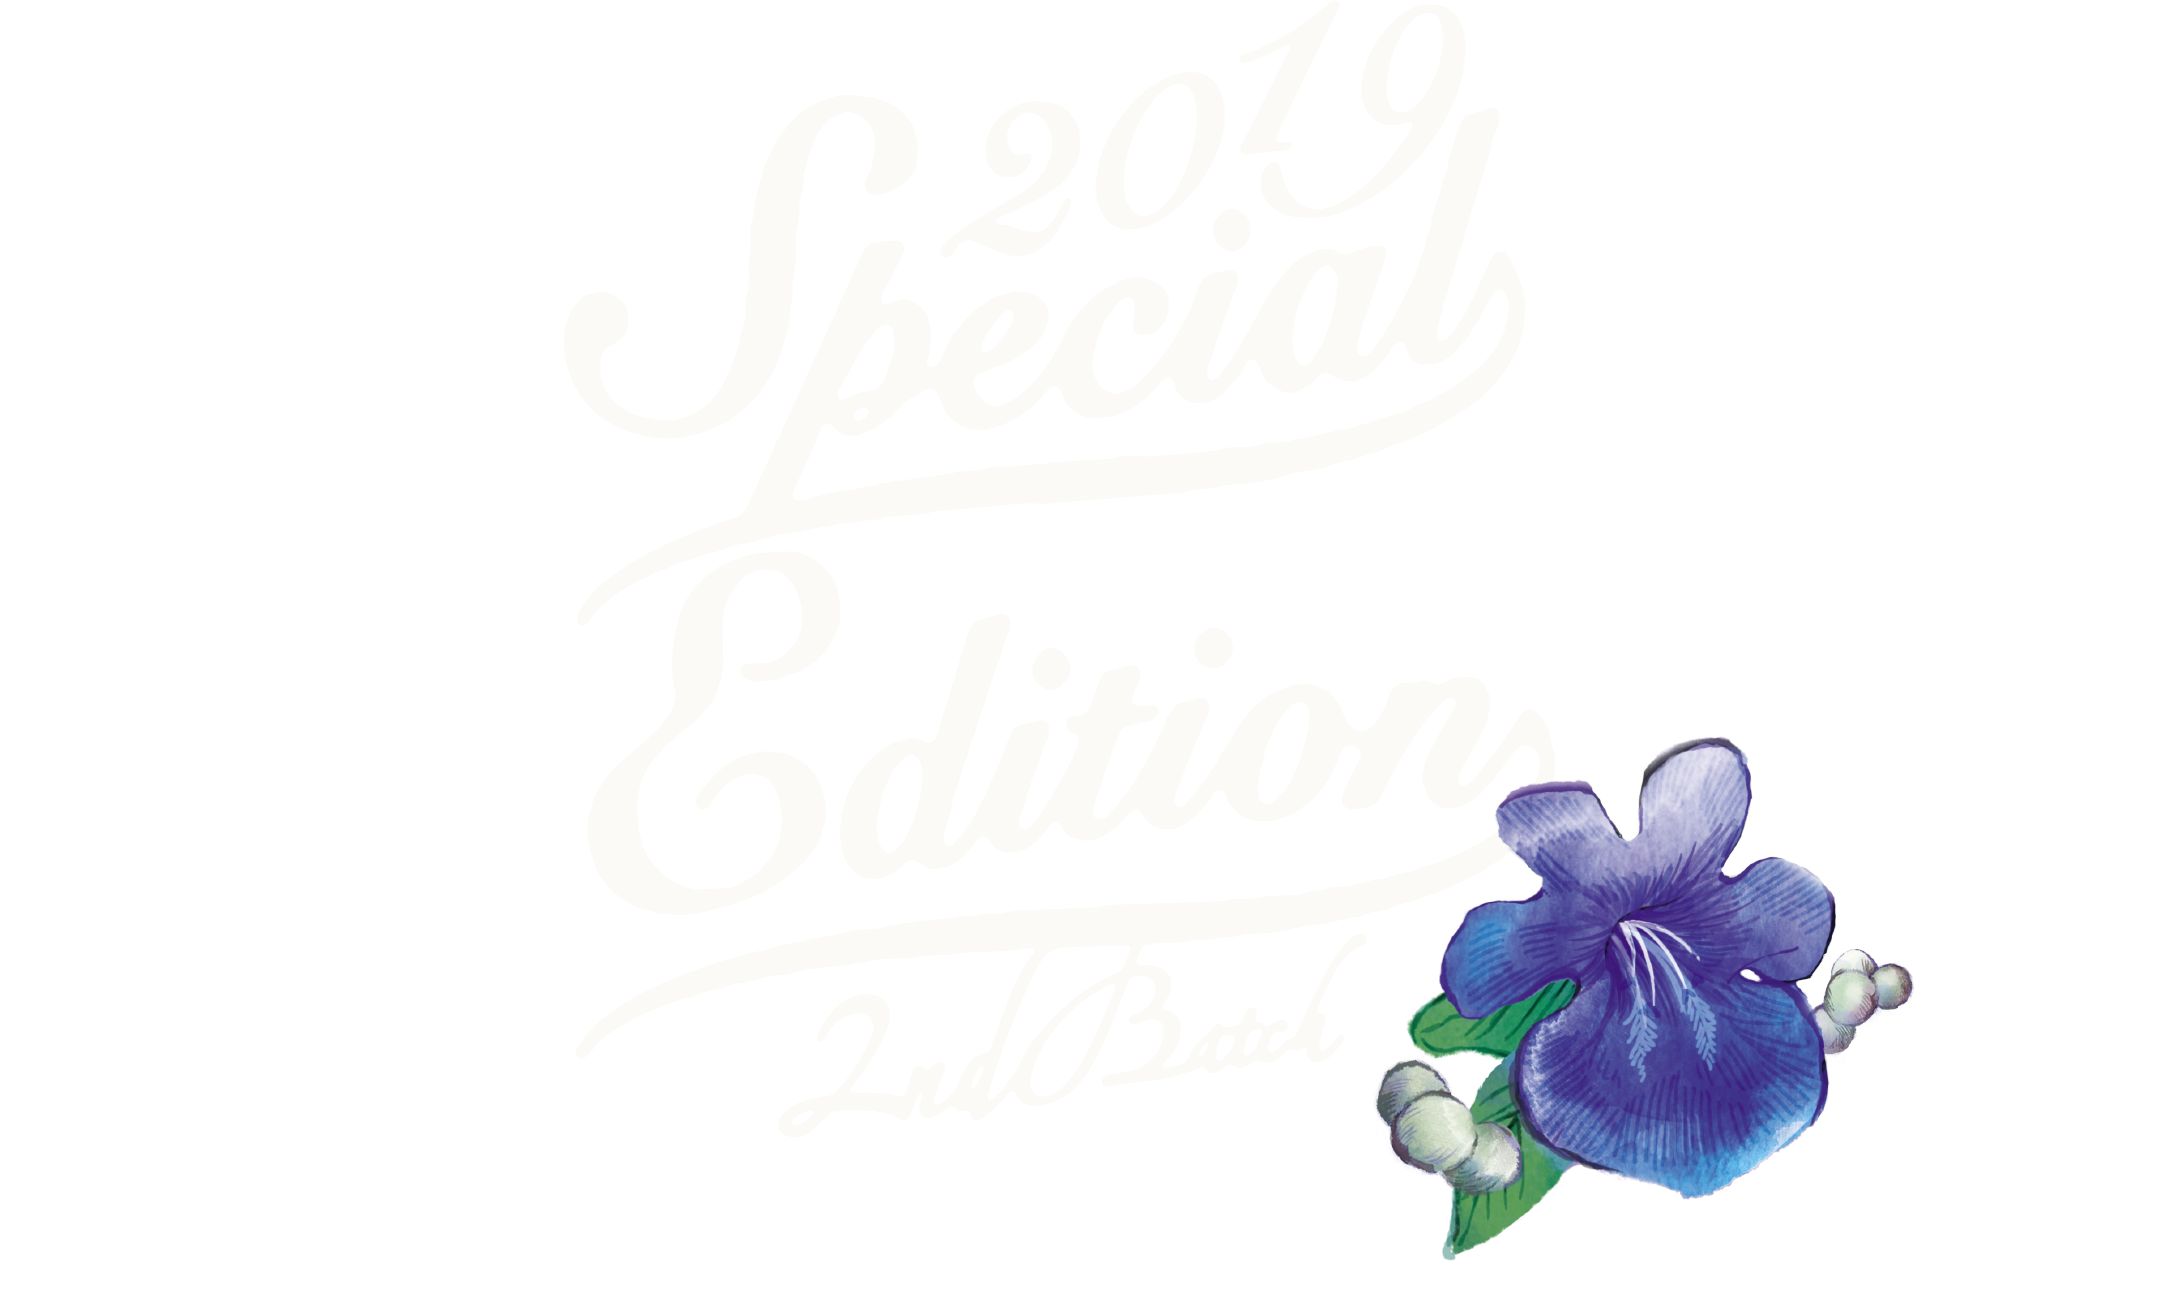 2019 Special Edition